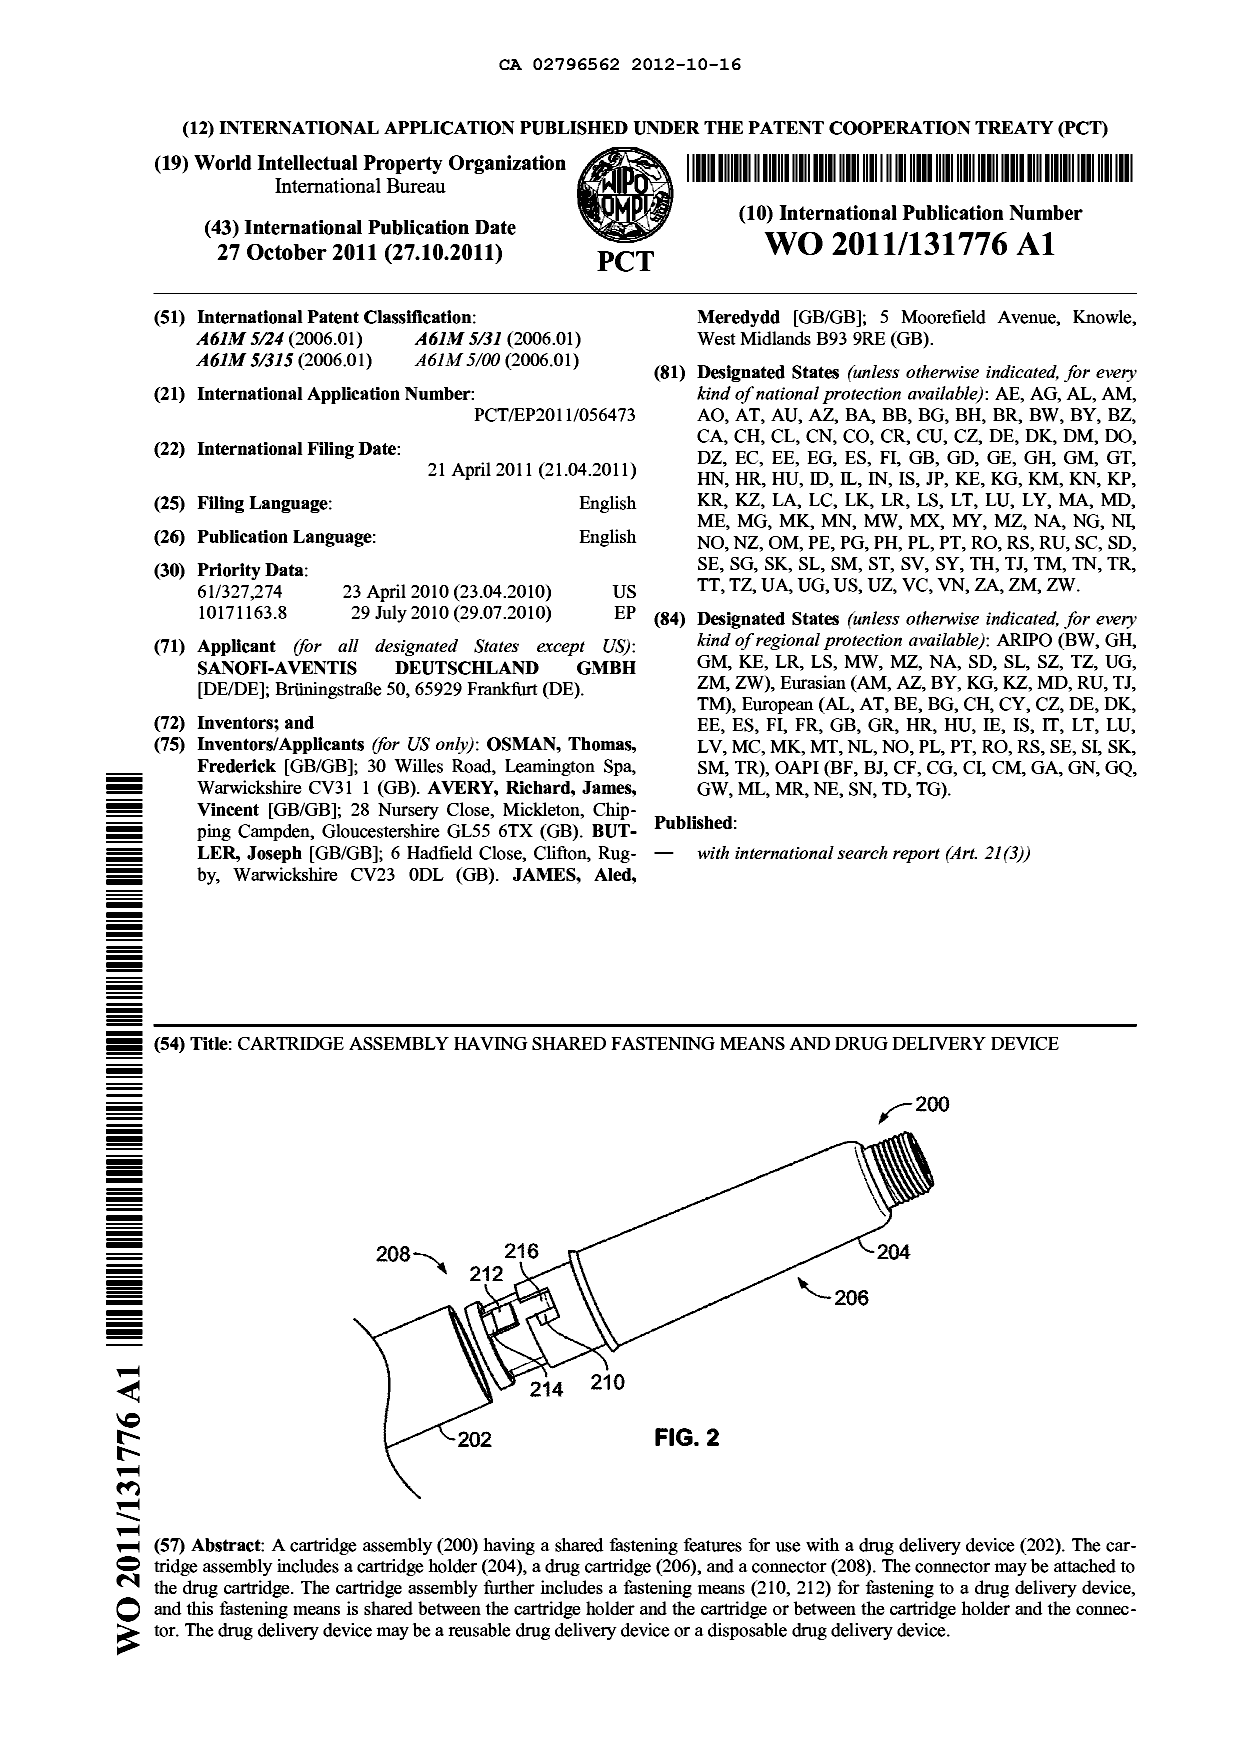 Document de brevet canadien 2796562. Abrégé 20121016. Image 1 de 1